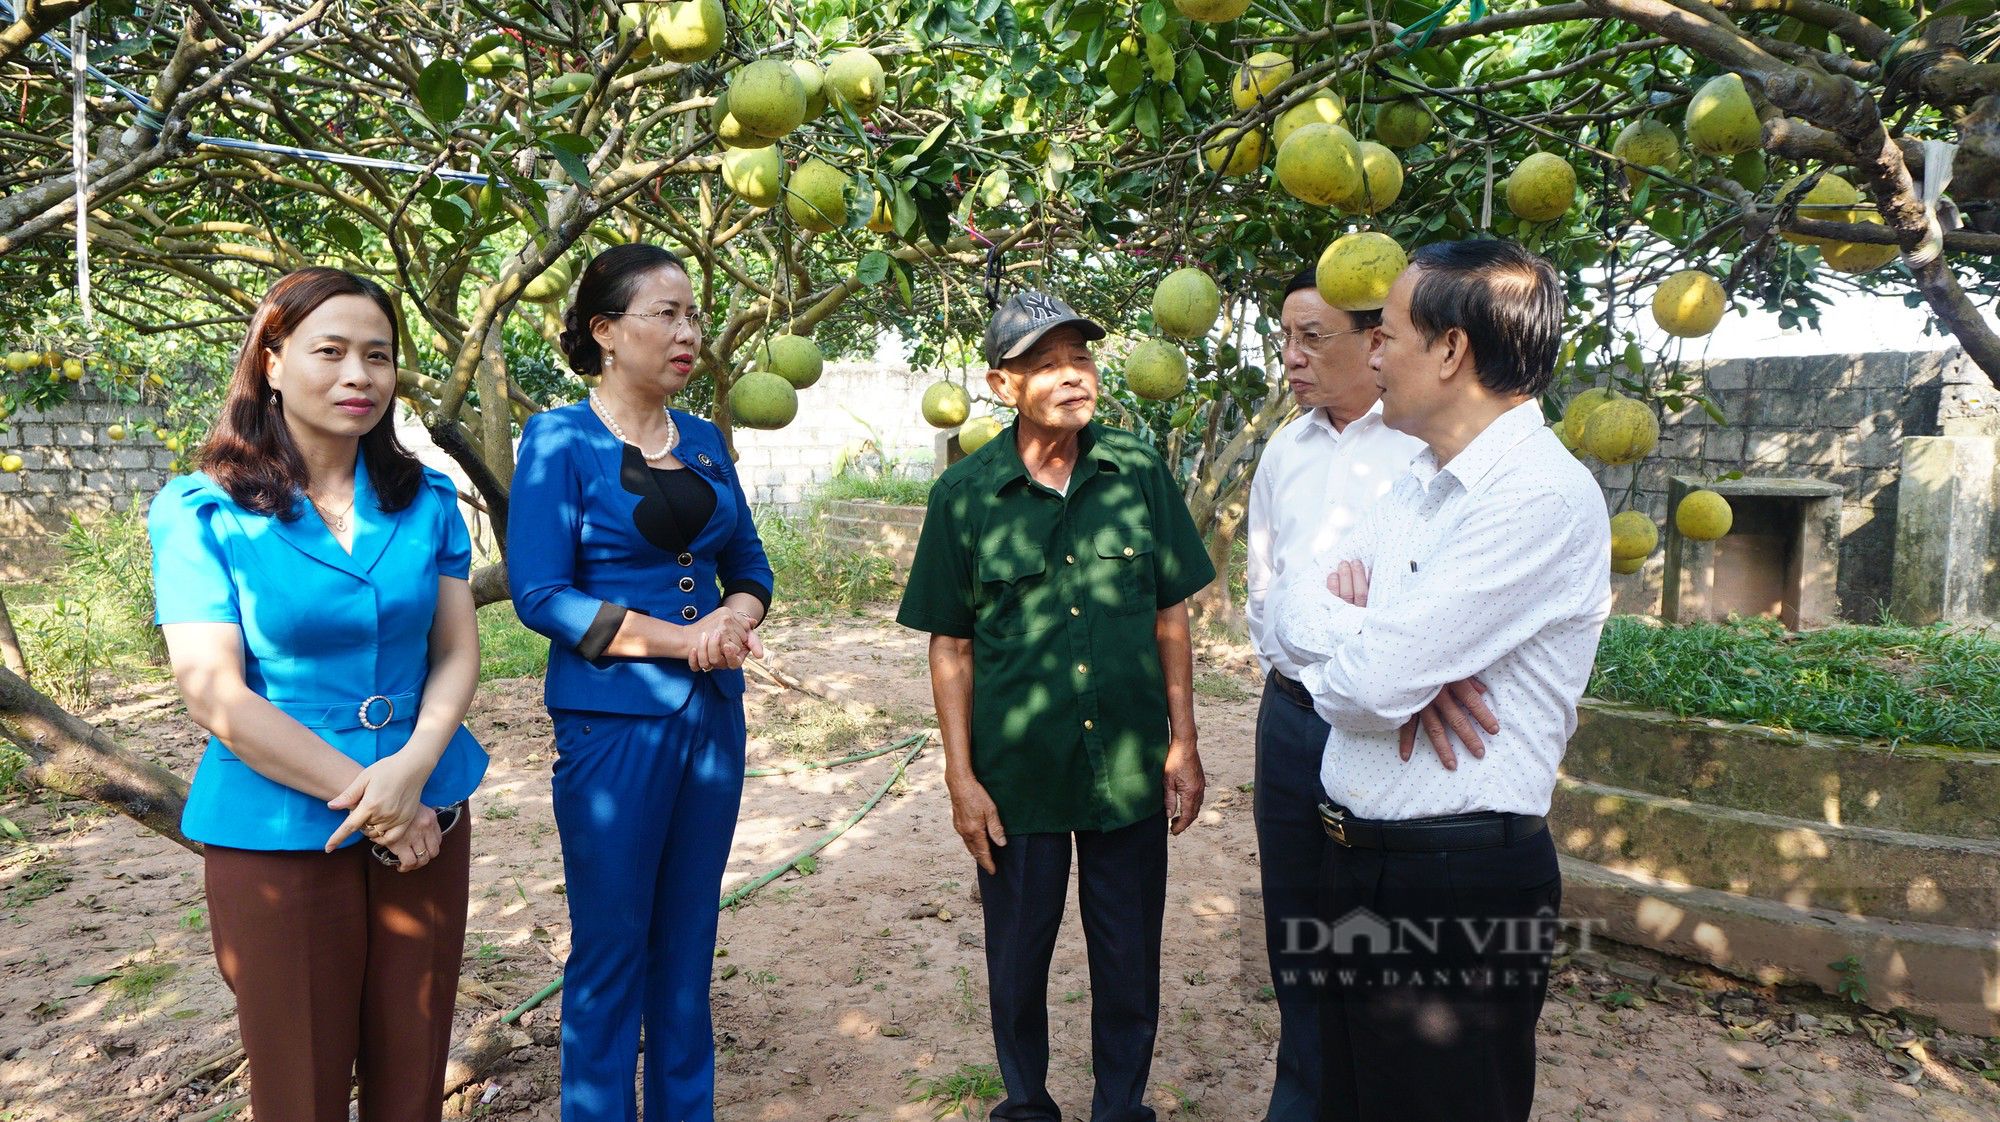 Phó Chủ tịch Hội NDVN Bùi Thị Thơm ấn tượng mô hình trồng nho công nghệ cao của nông dân Hà Nam - Ảnh 2.